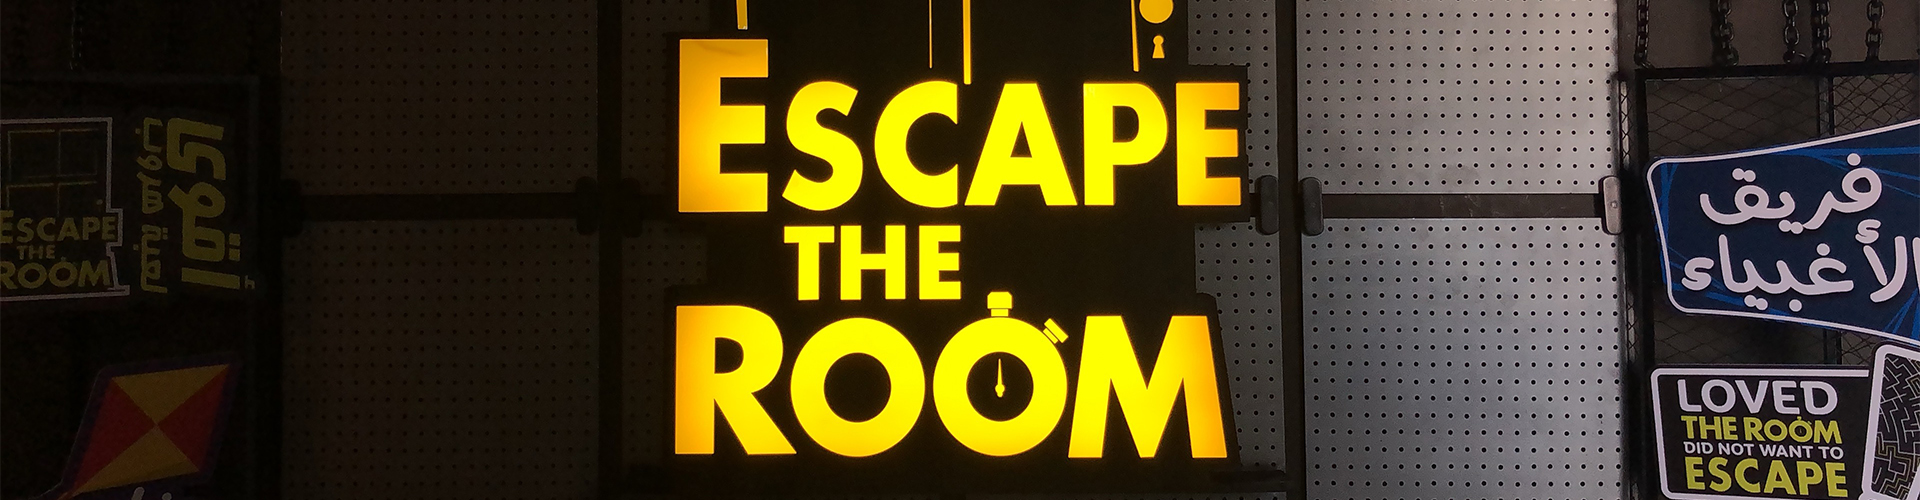 Escape the room boxpark 